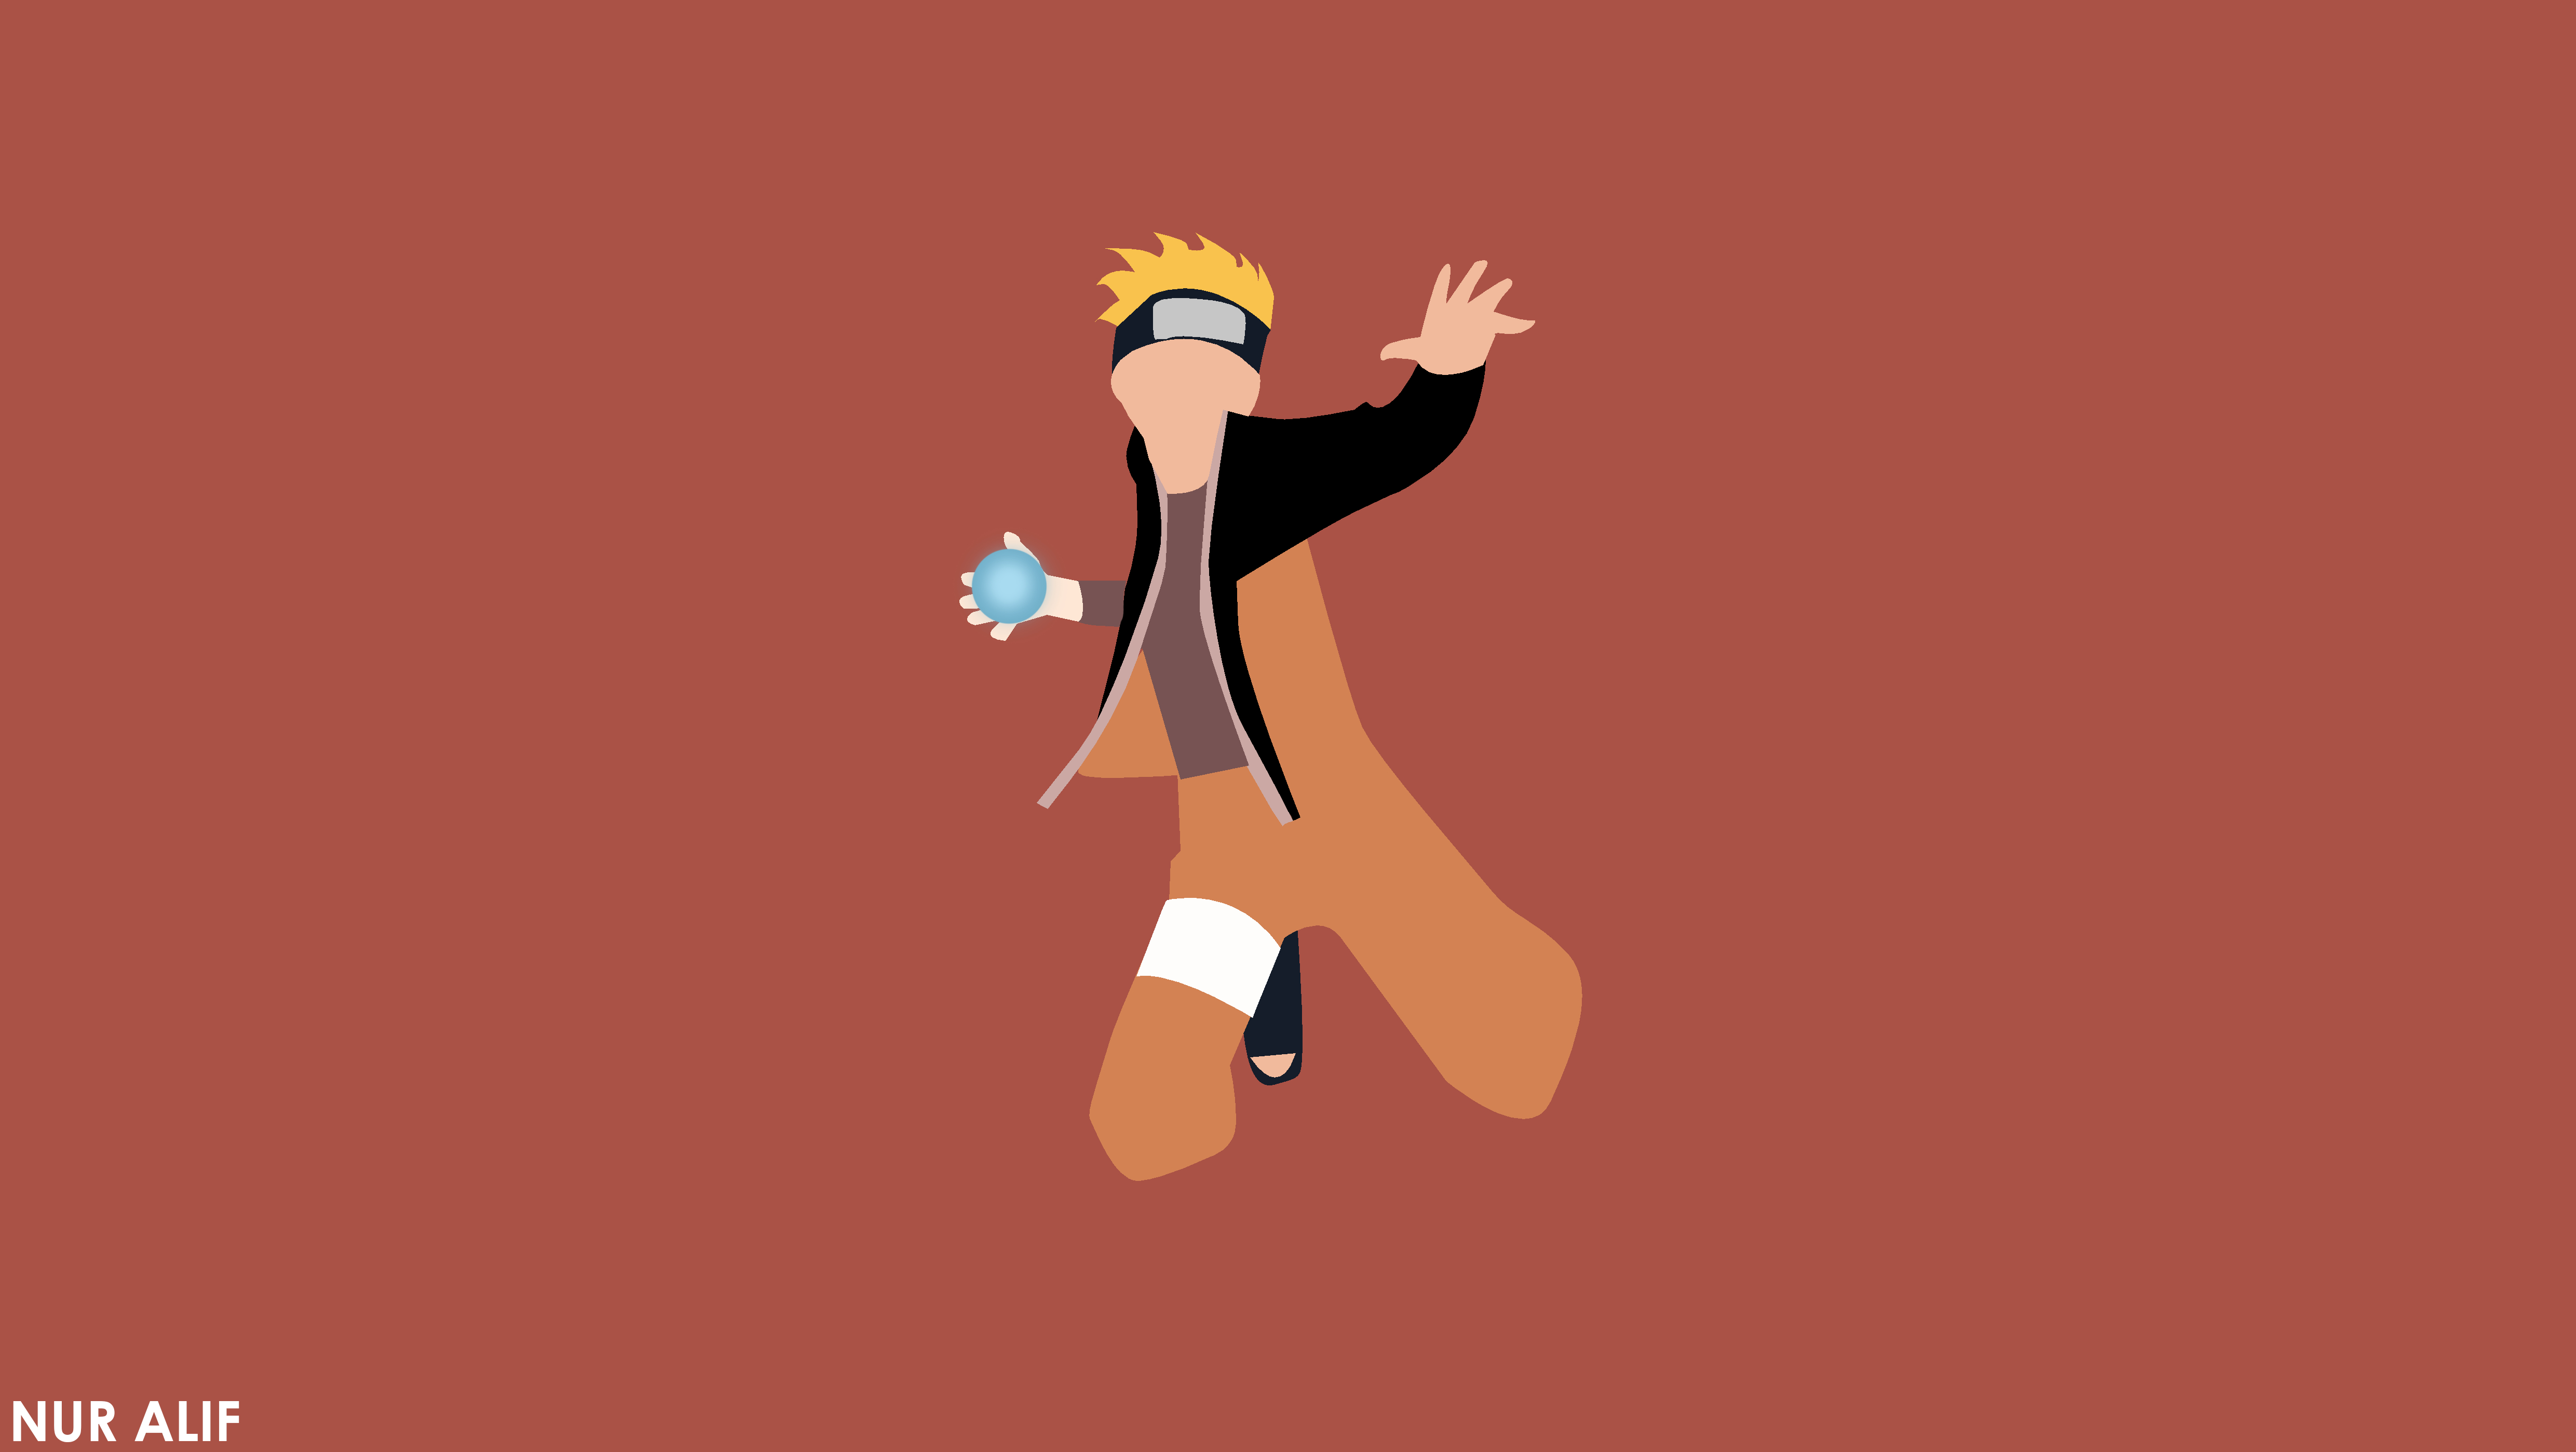 Naruto Uzumaki 4k Wallpaper, HD Anime 4K Wallpapers, Images and